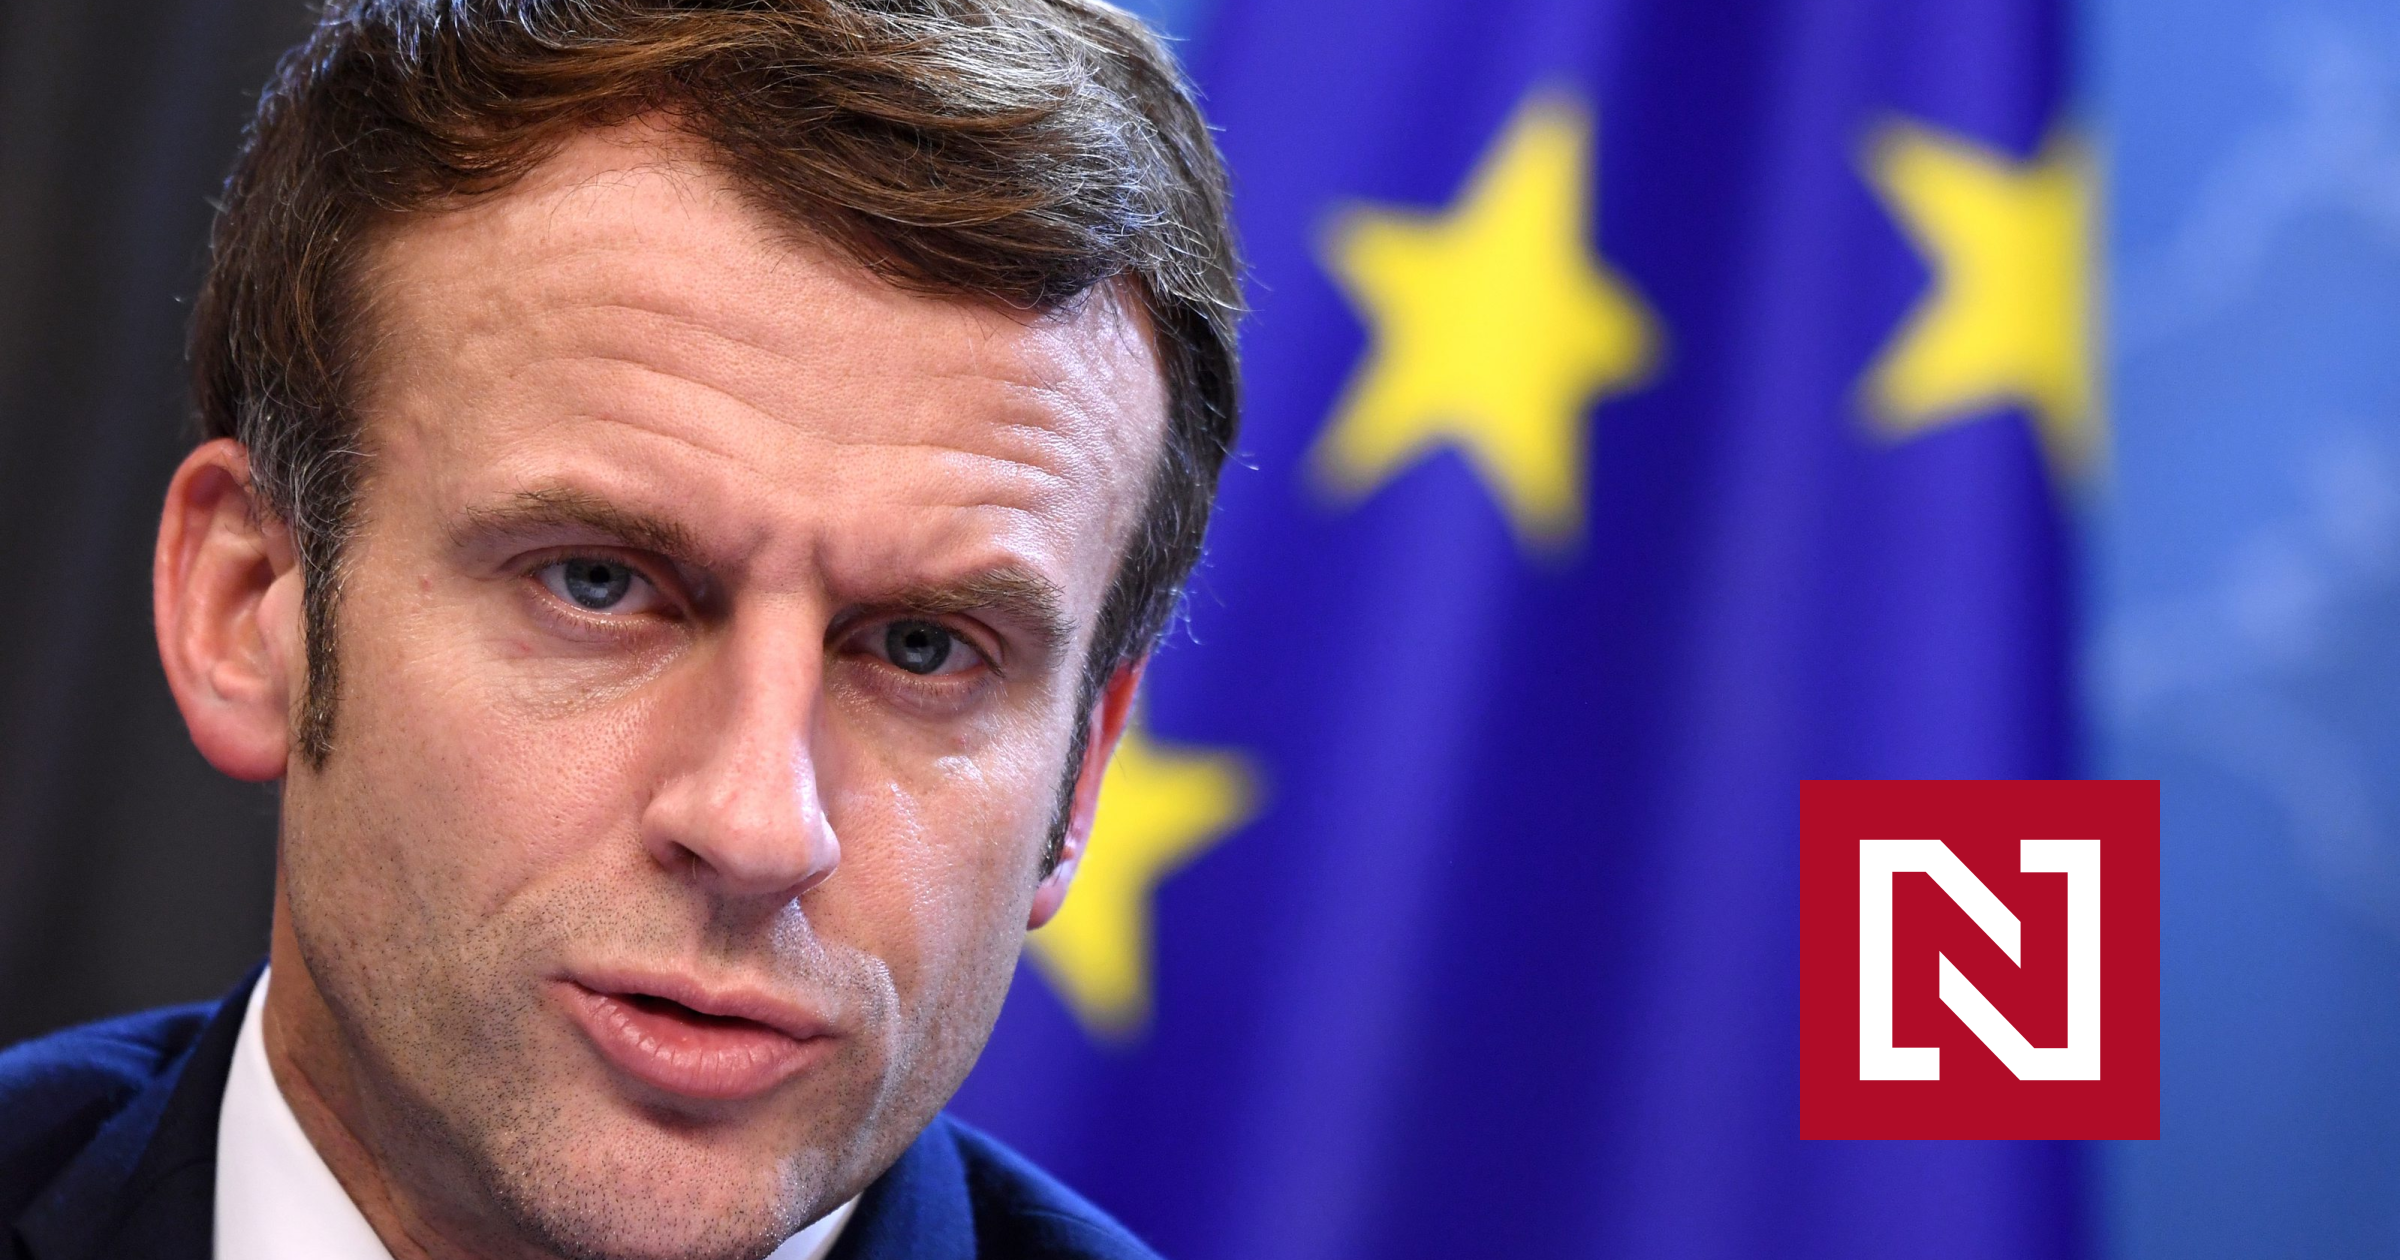 Macron veut gagner avec une campagne pro-européenne forte, mais ça peut être compliqué